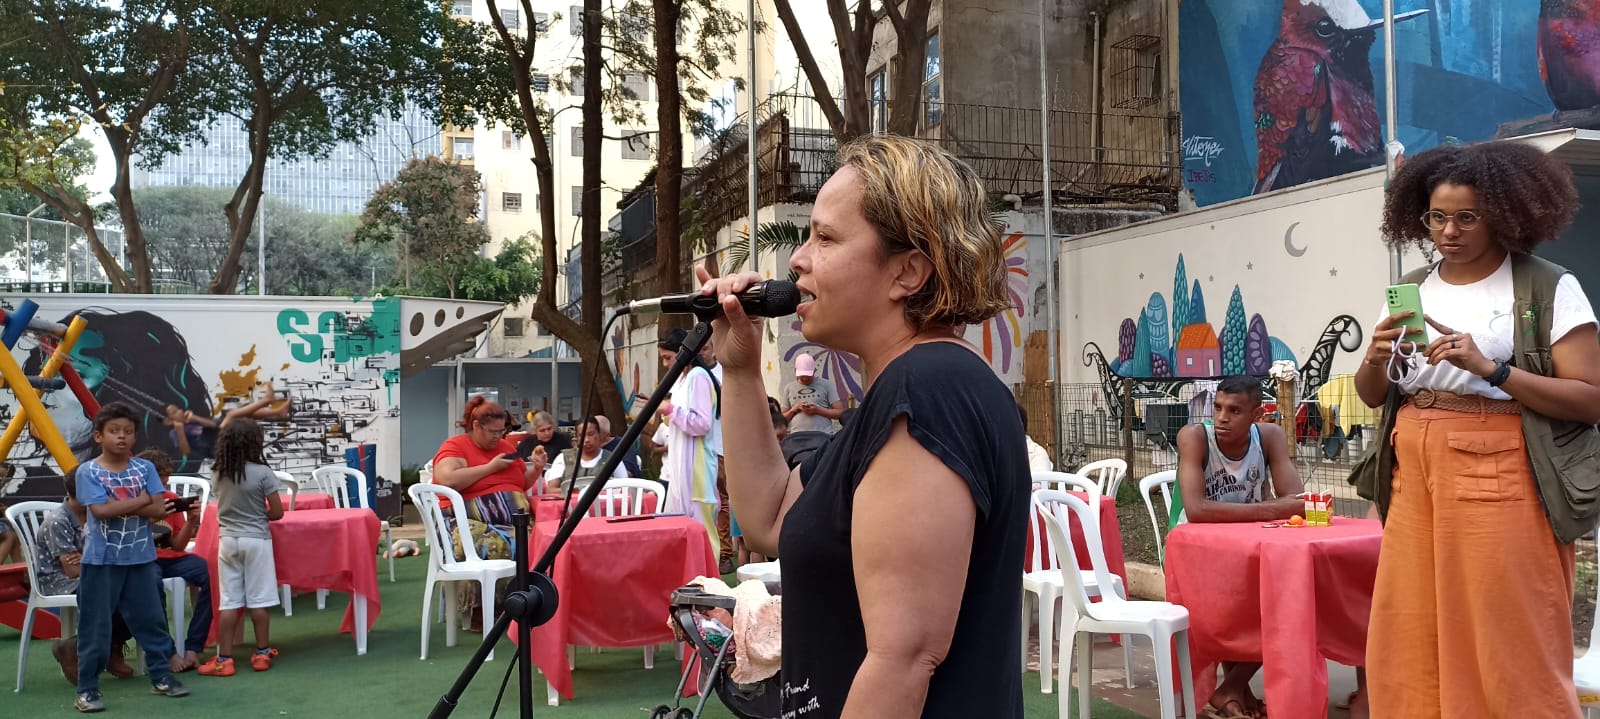 Uma mulher, vestindo uma blusa e uma camiseta preta, está na frente de um microfone com um tripé, cantando. Elas têm cabelos curtos até os ombros com mechas loiras.